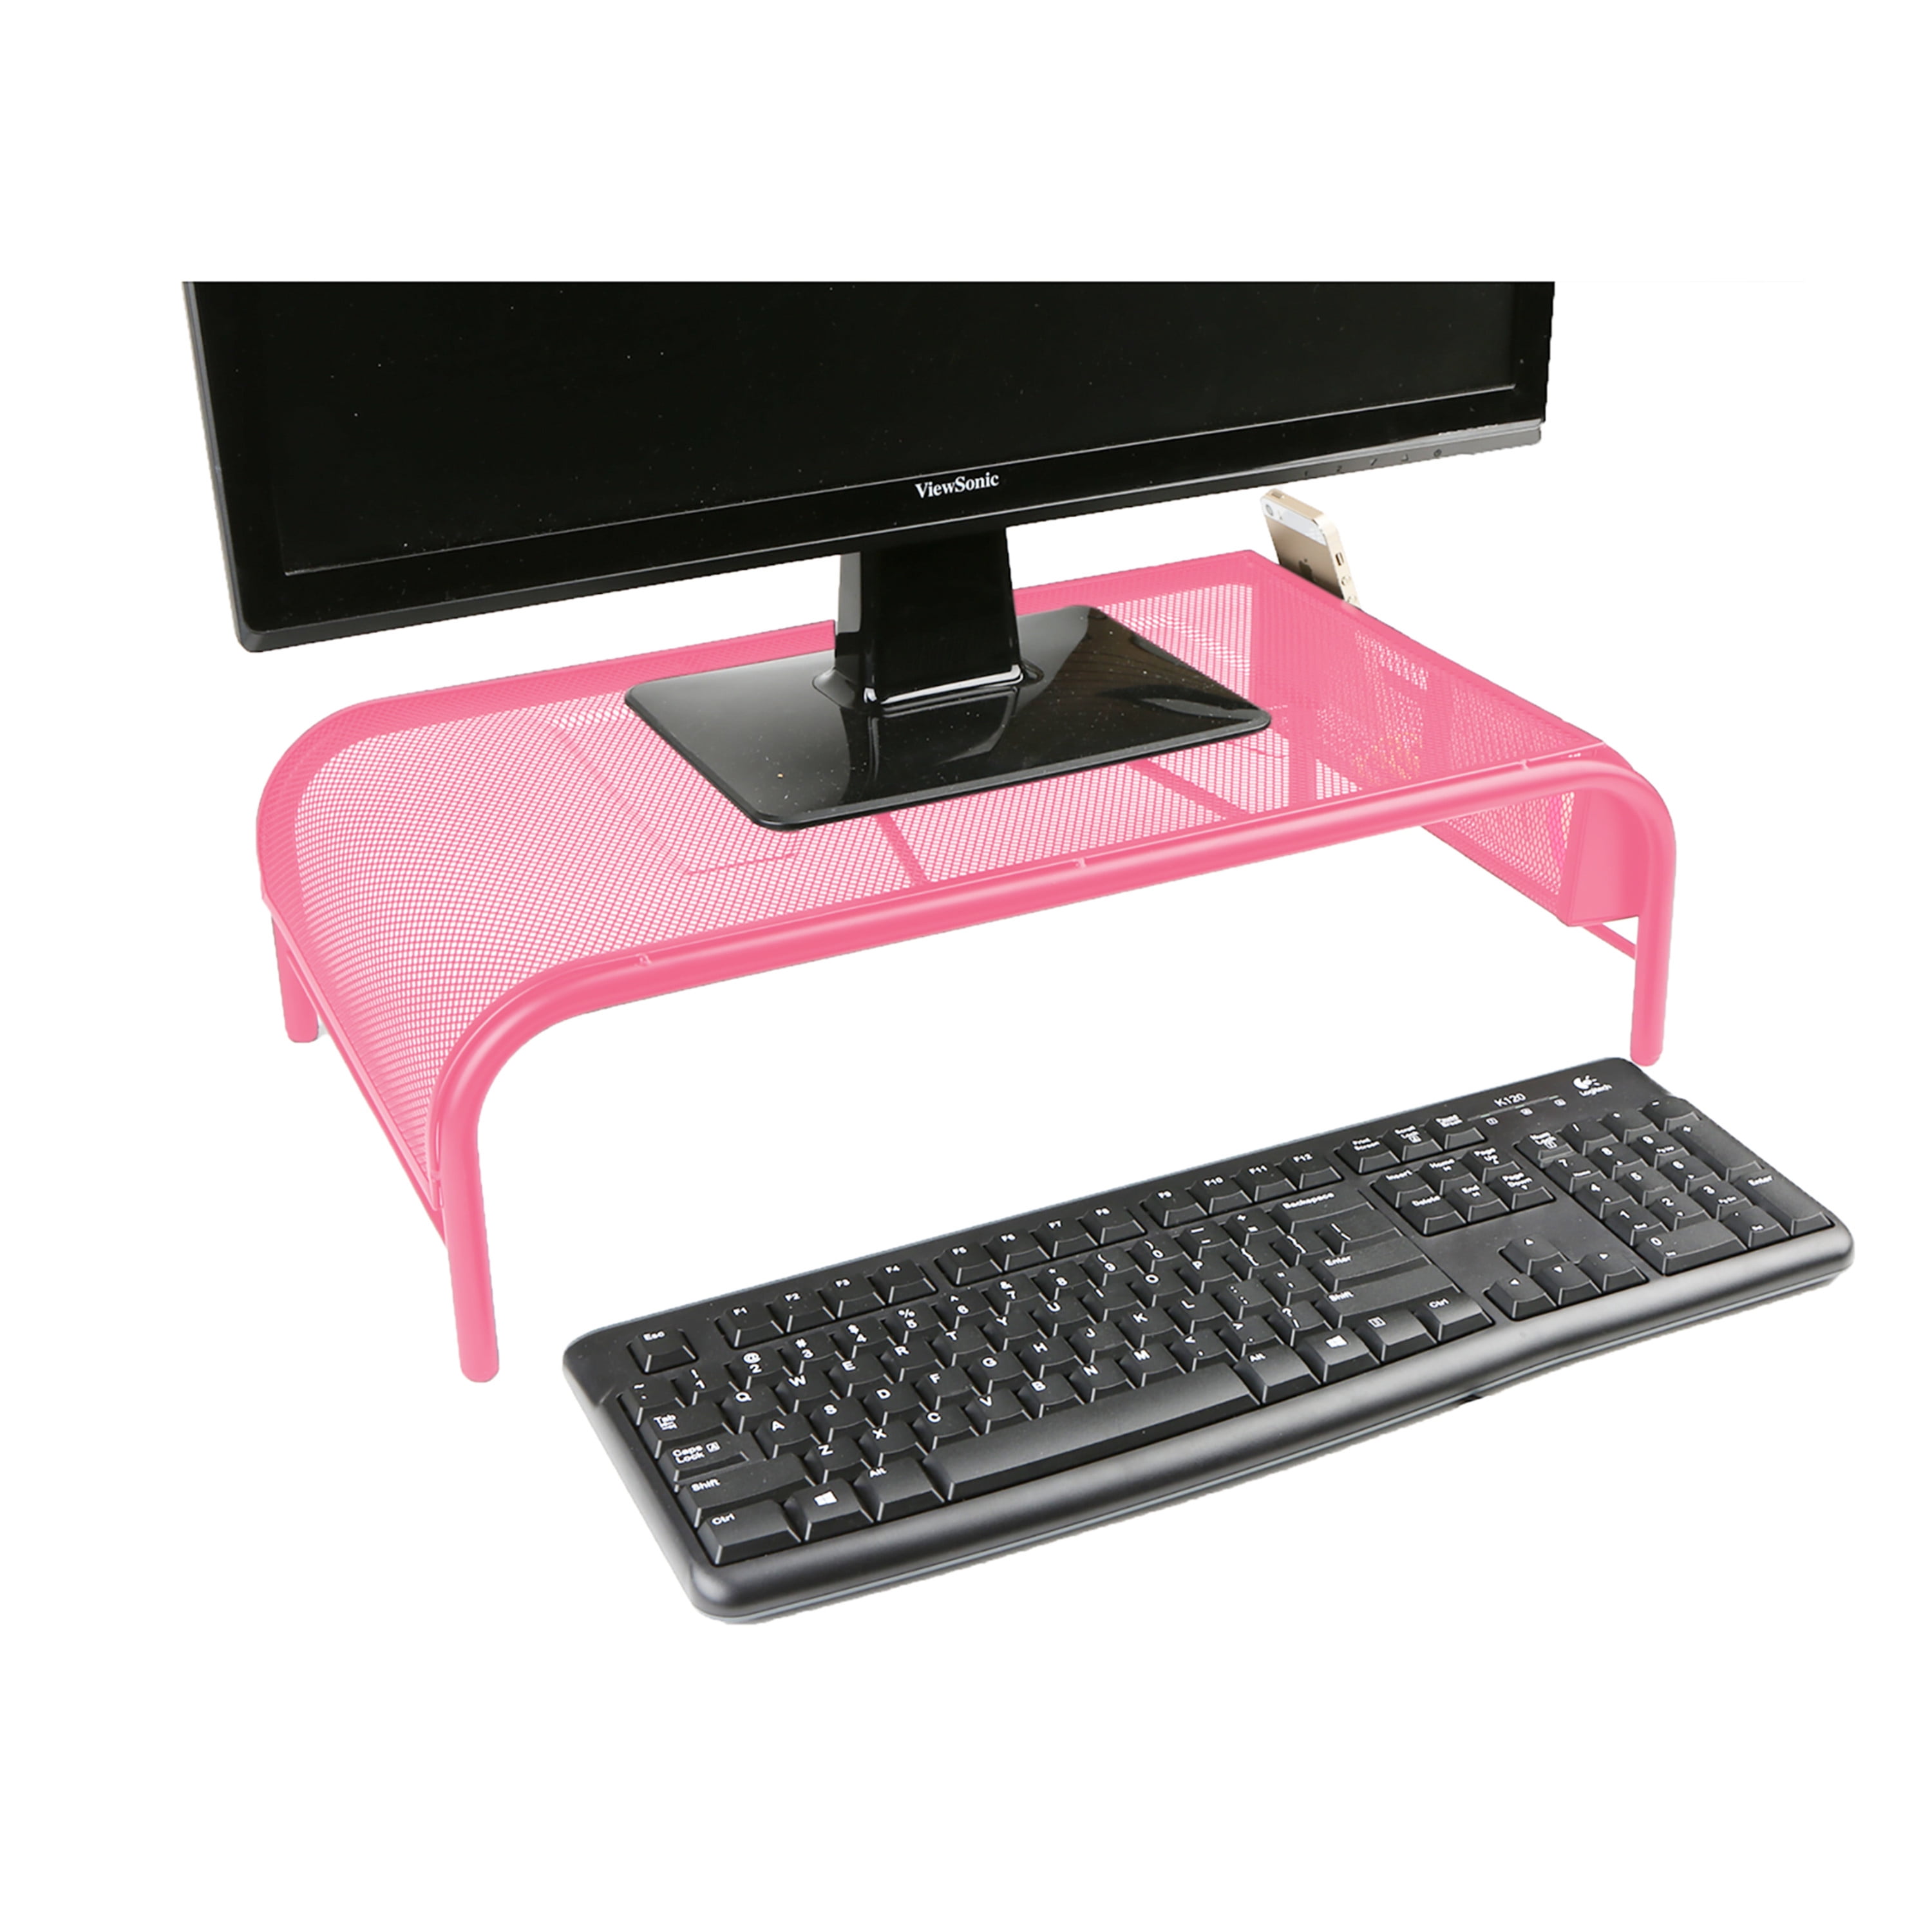 Mind Reader Mobile Sitting Standing Desk Pink